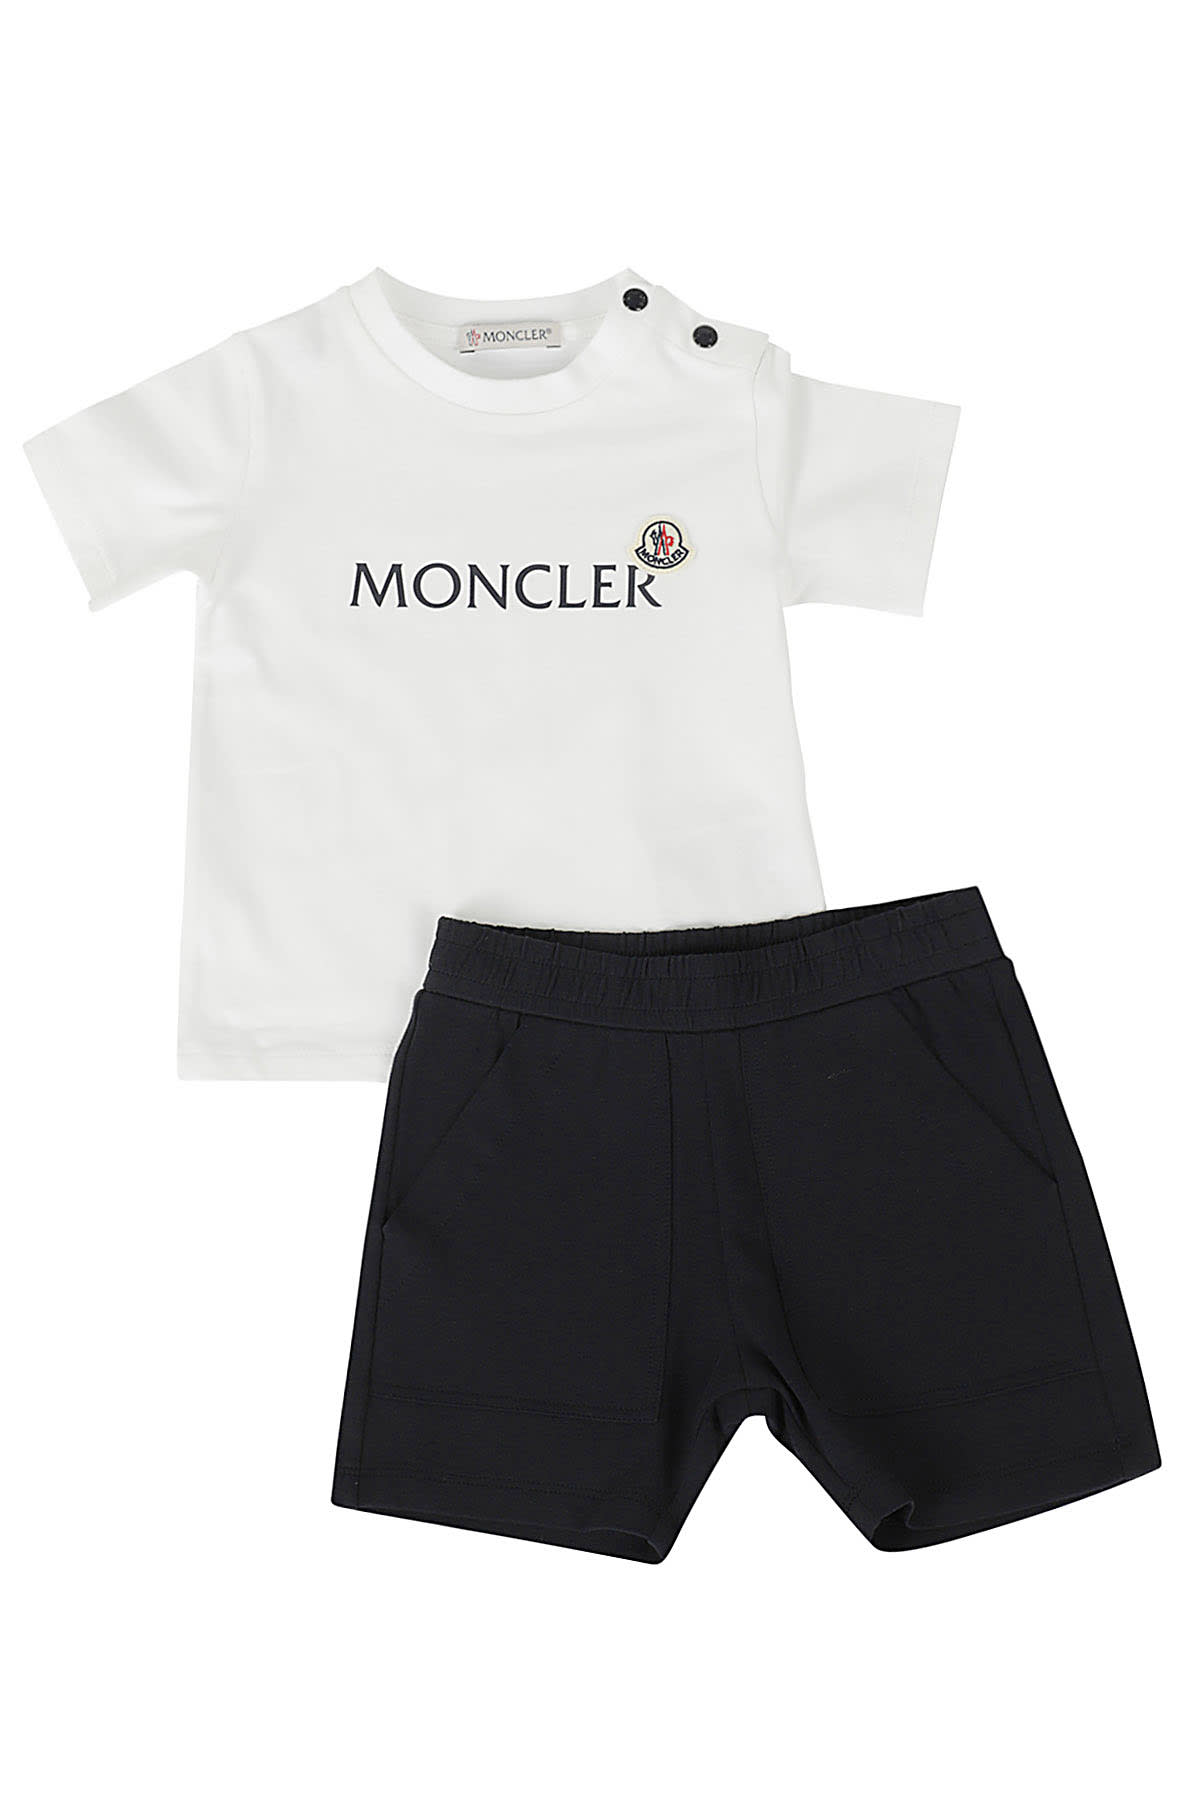 Moncler Babies' 2 Pz Tshirt E Shorts In Bianco